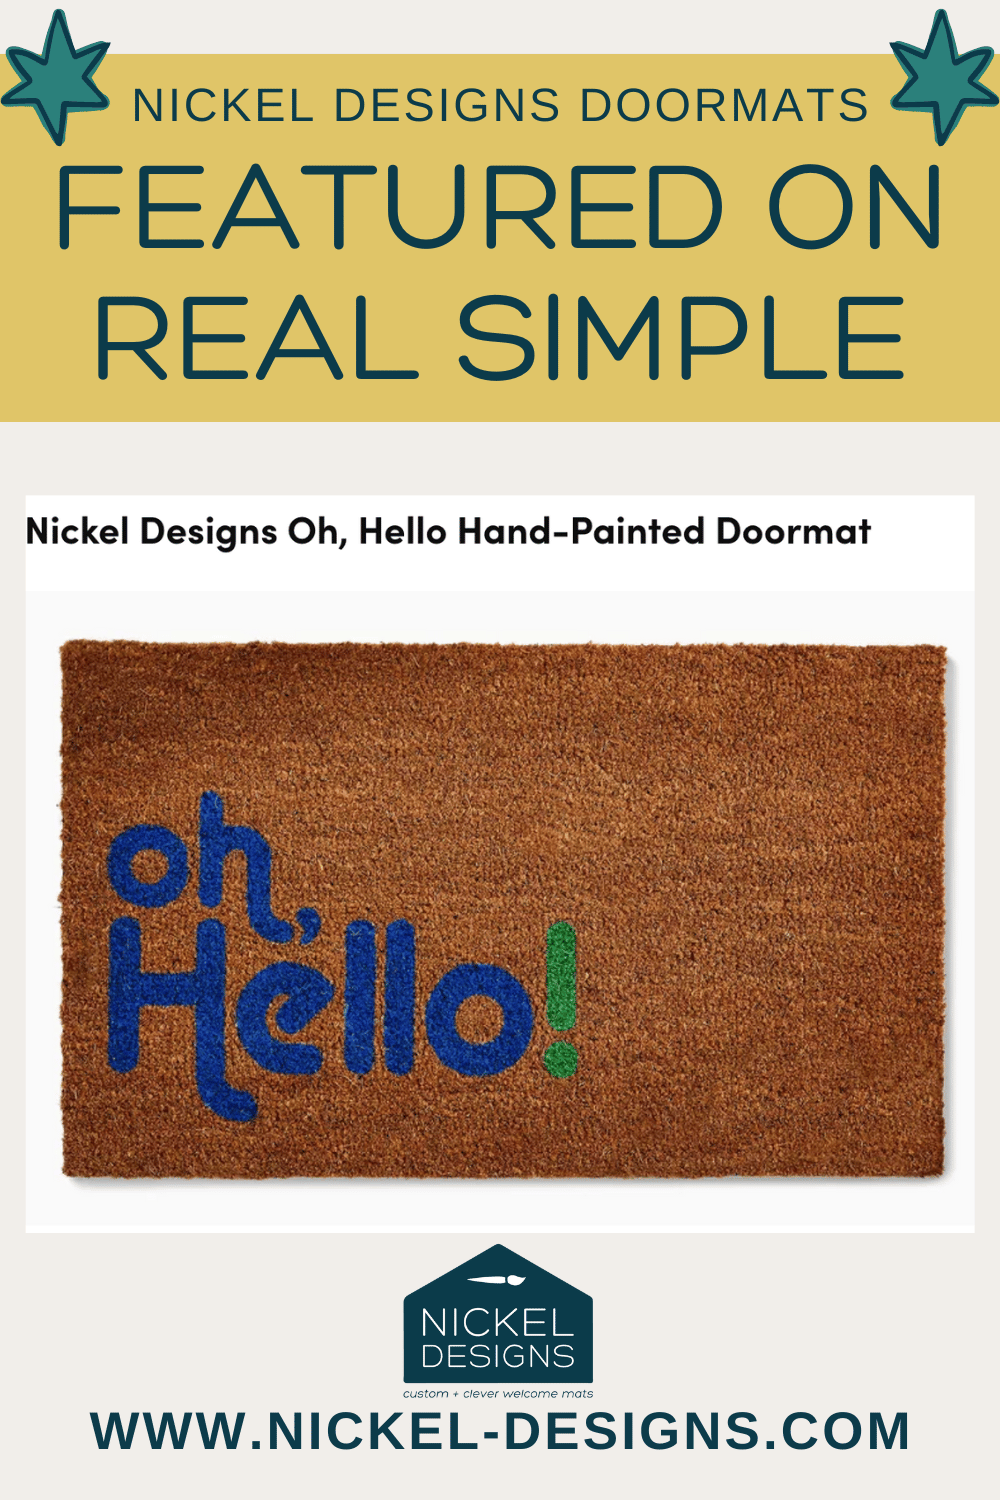 Nickel Designs Doormats Featured in Real Simple's Best Welcome Mats List!